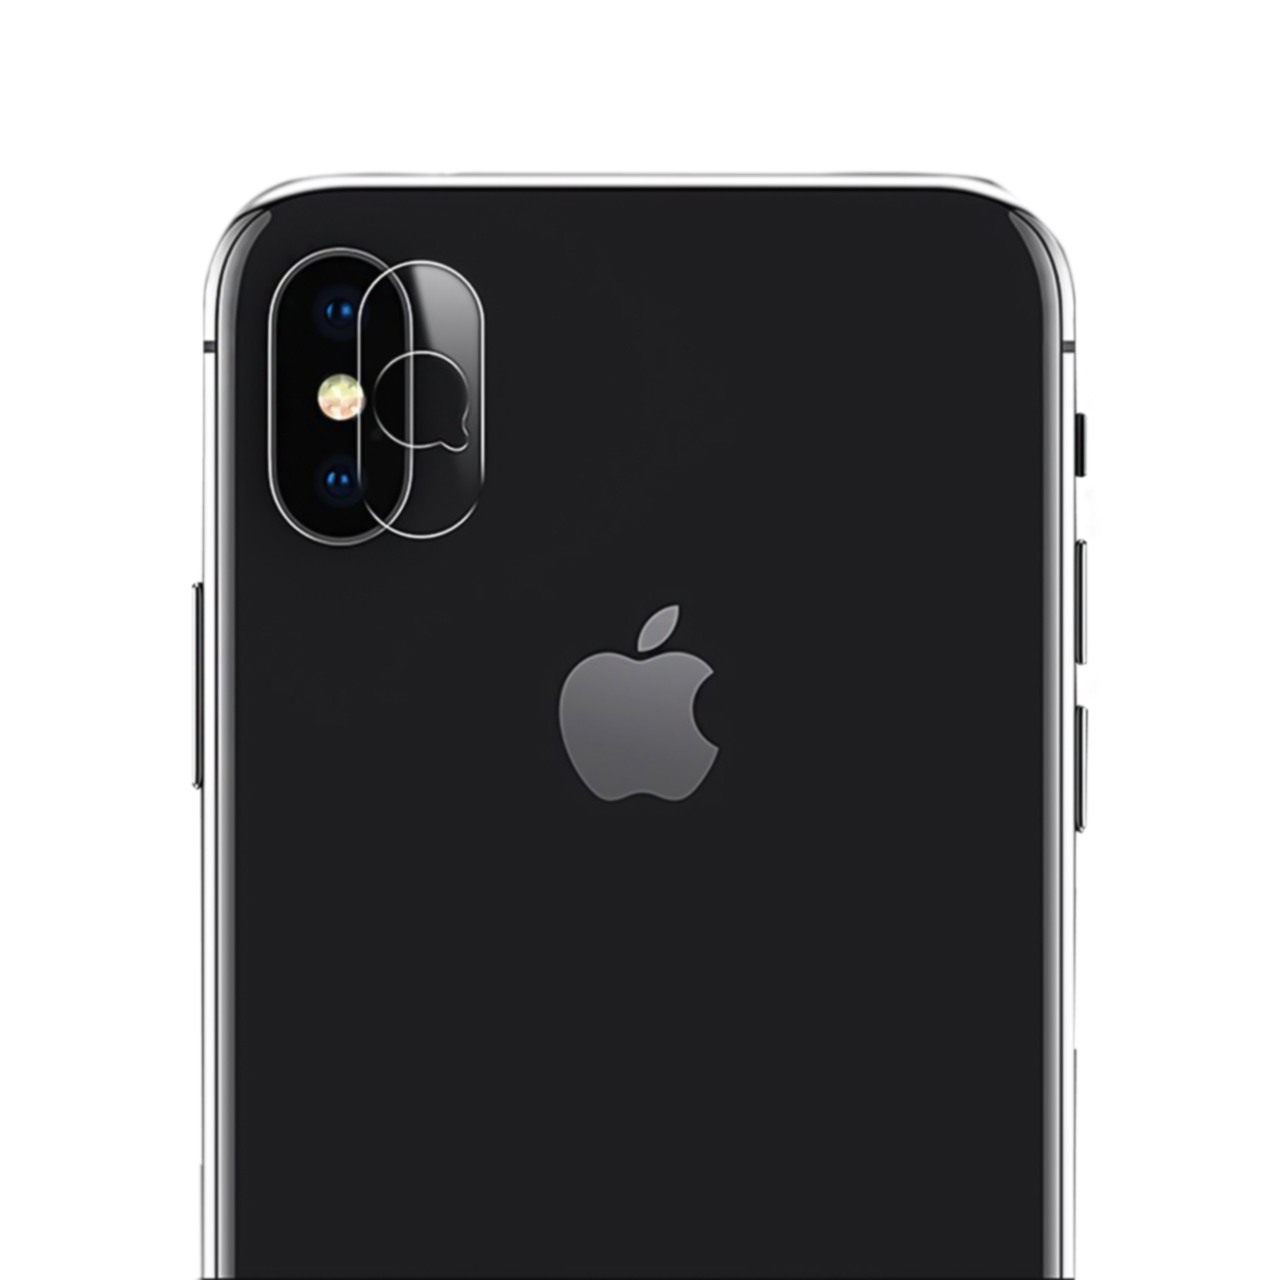  محافظ لنز دوربین یوسمز مدل US-BH468 مناسب برای گوشی موبایل اپل iPhone XS Max